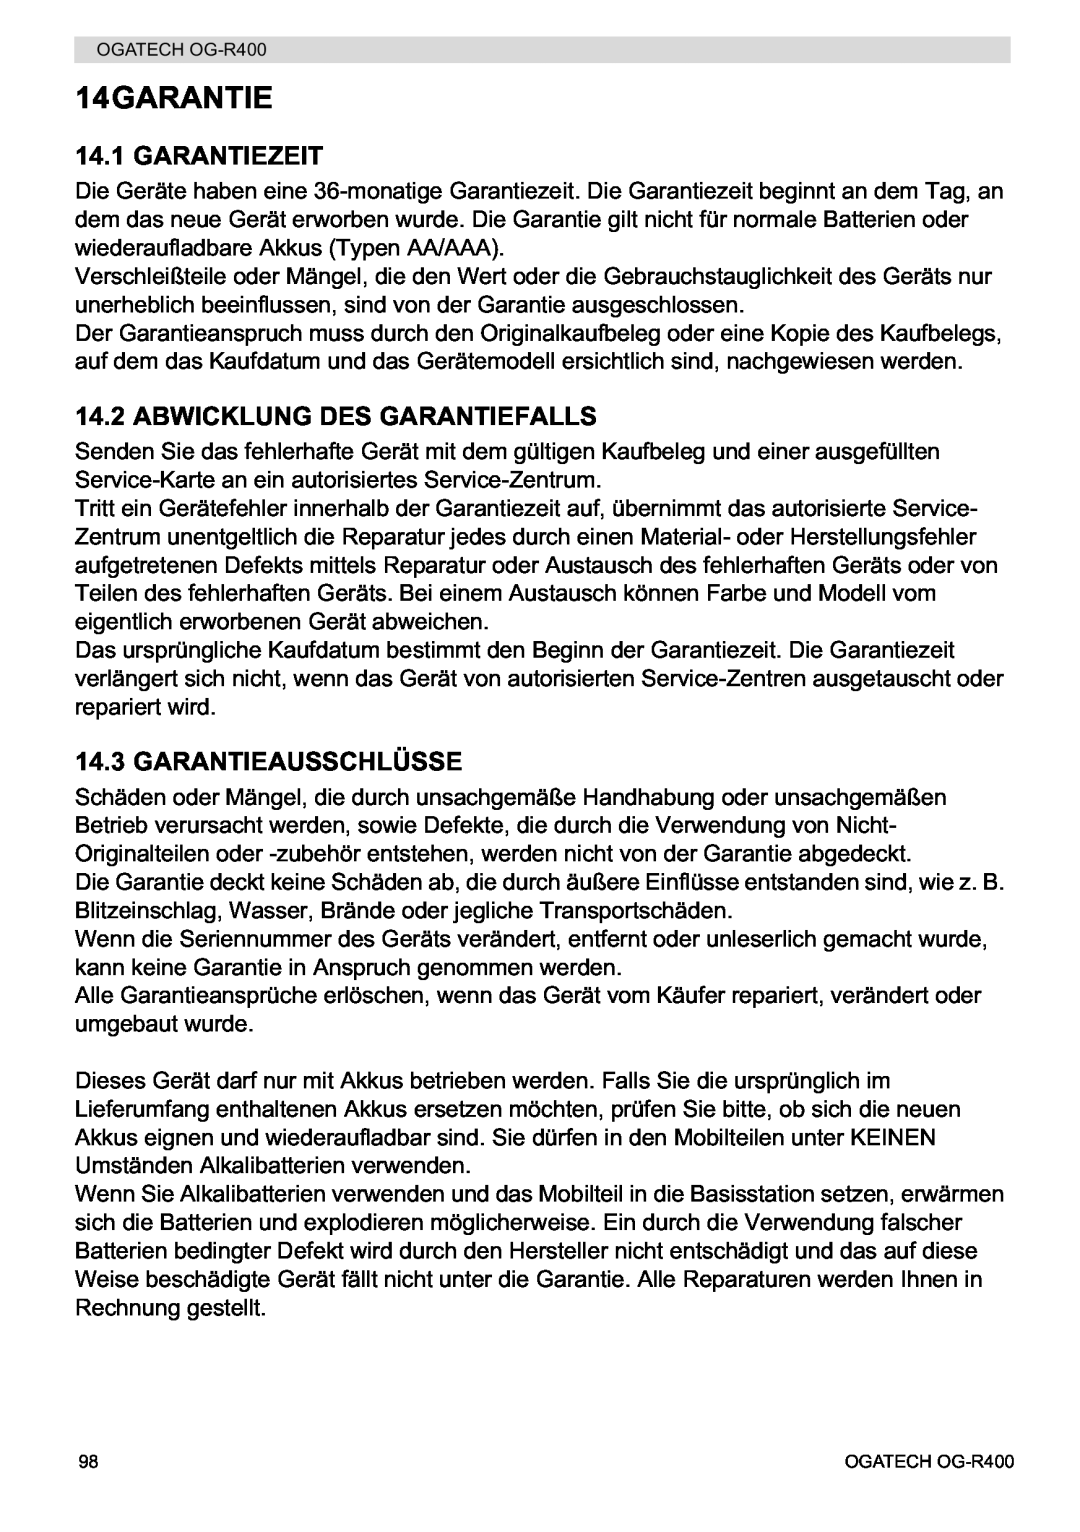 Topcom OG-R400 manual Garantiezeit, Abwicklung Des Garantiefalls, Garantieausschlüsse, 14GARANTIE 